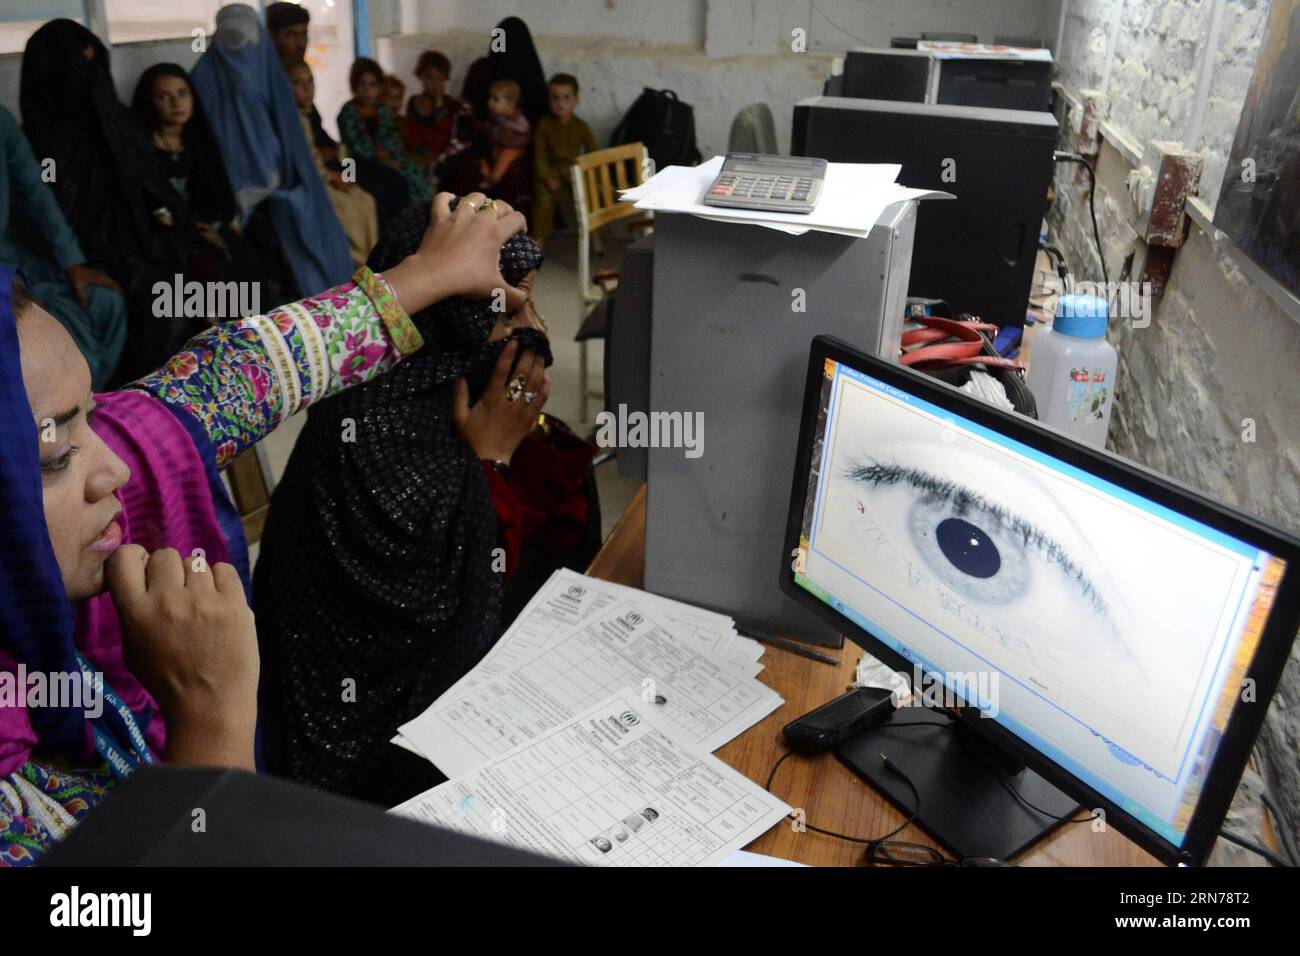 (150826) -- QUETTA, 26 agosto 2015 -- un dipendente dell'alto Commissariato delle Nazioni Unite per i rifugiati (UNHCR) scansiona un occhio di una donna rifugiata afghana in un centro di registrazione dell'UNHCR nel sud-ovest del Pakistan, Quetta, 26 agosto 2015. Attualmente ci sono 1,5 milioni di rifugiati afghani registrati in Pakistan. ) (lrz) PAKISTAN-QUETTA-AFGHANISTAN-REFUGEES Asad PUBLICATIONxNOTxINxCHN 150826 Quetta Aug 26 2015 a dipendente dell'alto Commissariato delle Nazioni Unite per i rifugiati l'UNHCR esegue scansioni di Eye of to Afghan Refugee Woman AT a UNHCR Registration Centre in Southwest Pakistan S Quetta Aug 26 2015 Foto Stock